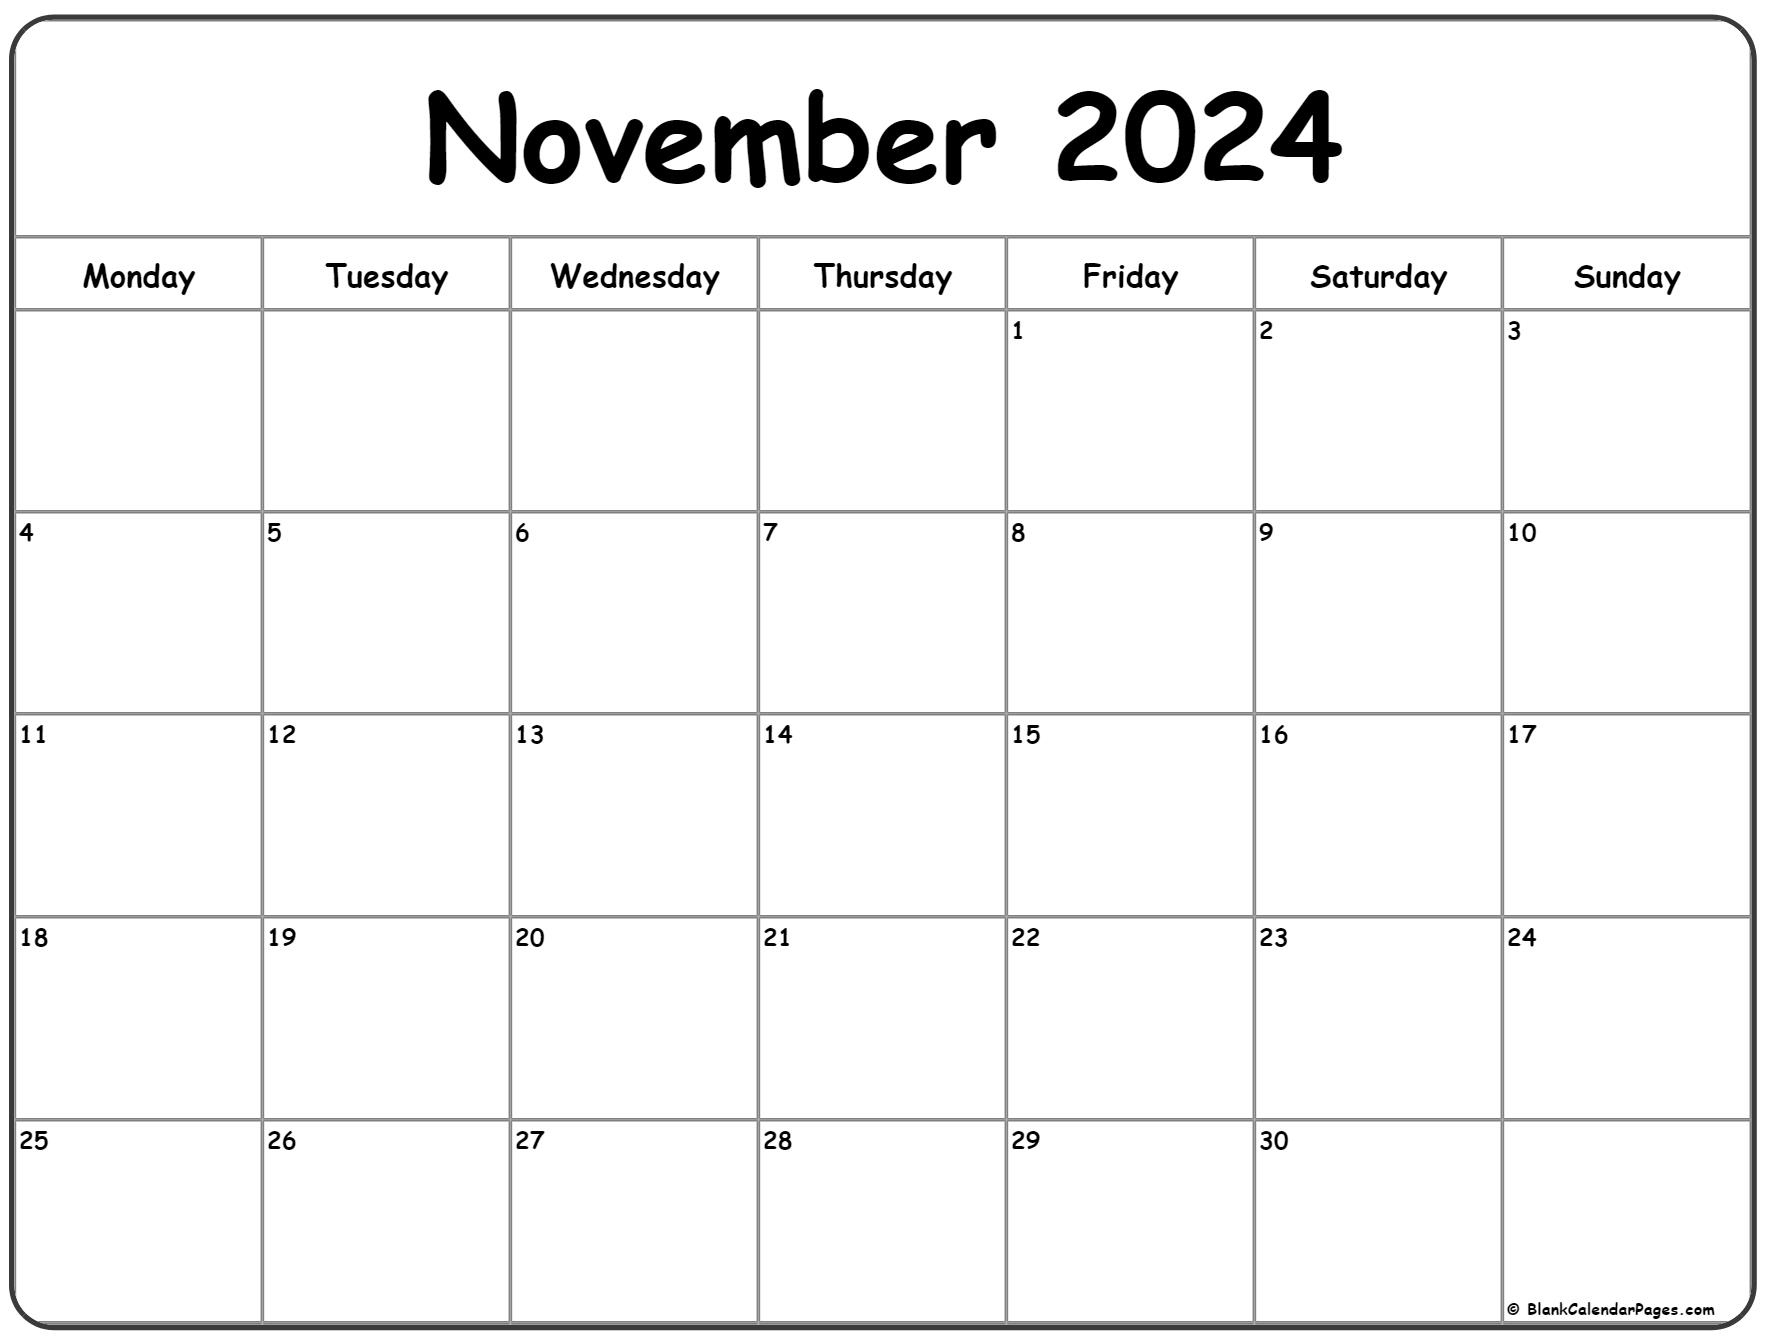 November 2024 Monday Calendar | Monday To Sunday | Printable Calendar 2024 November